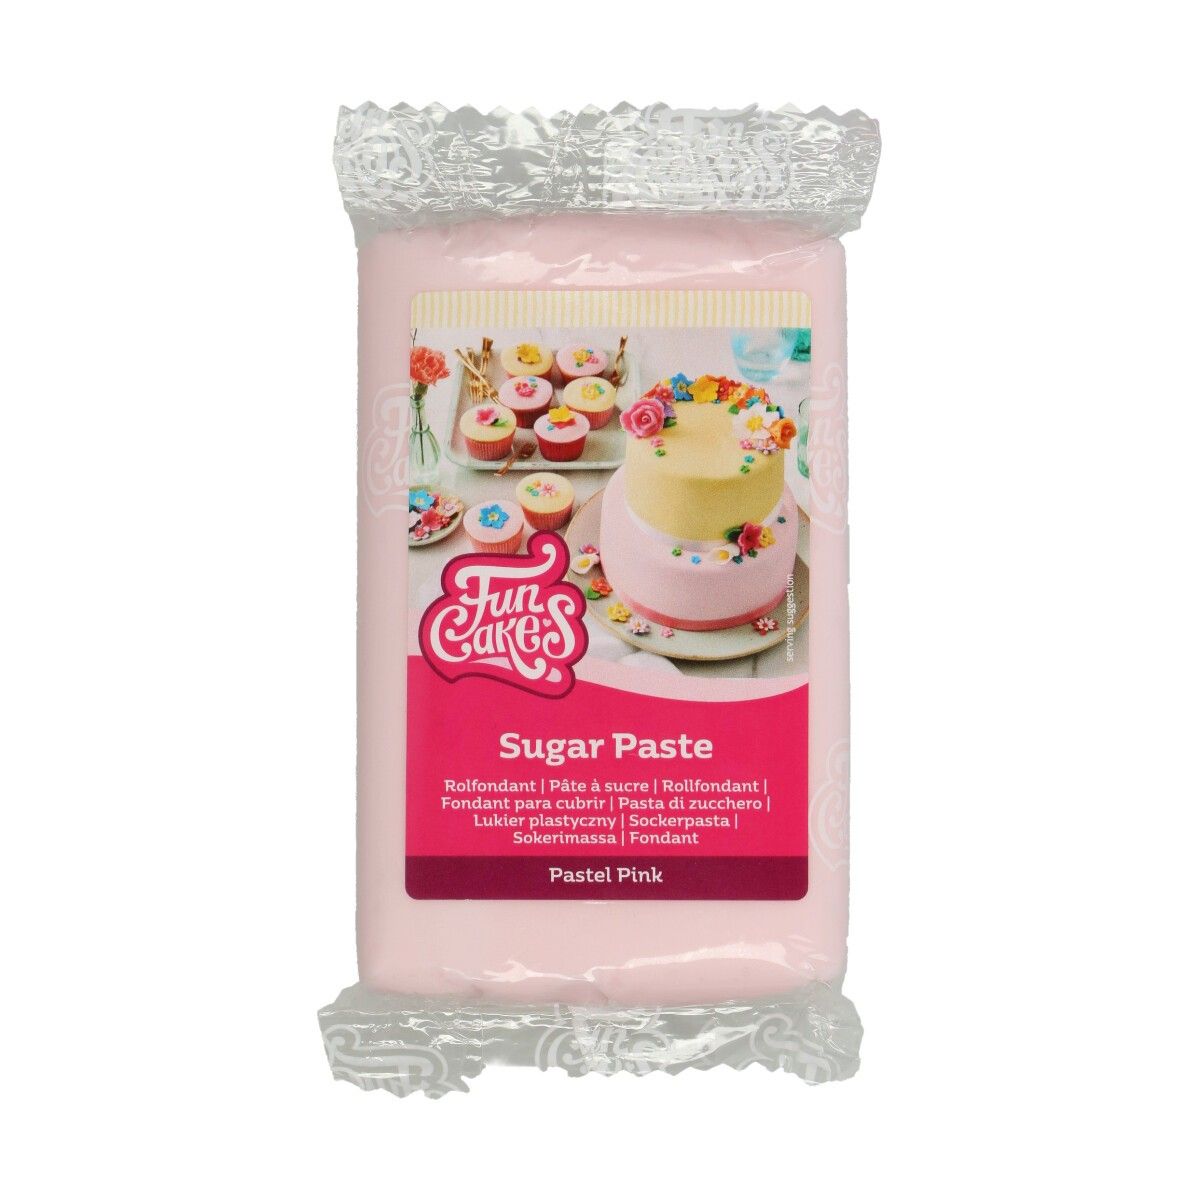 FC Sugarpaste Pastel Pink 250g